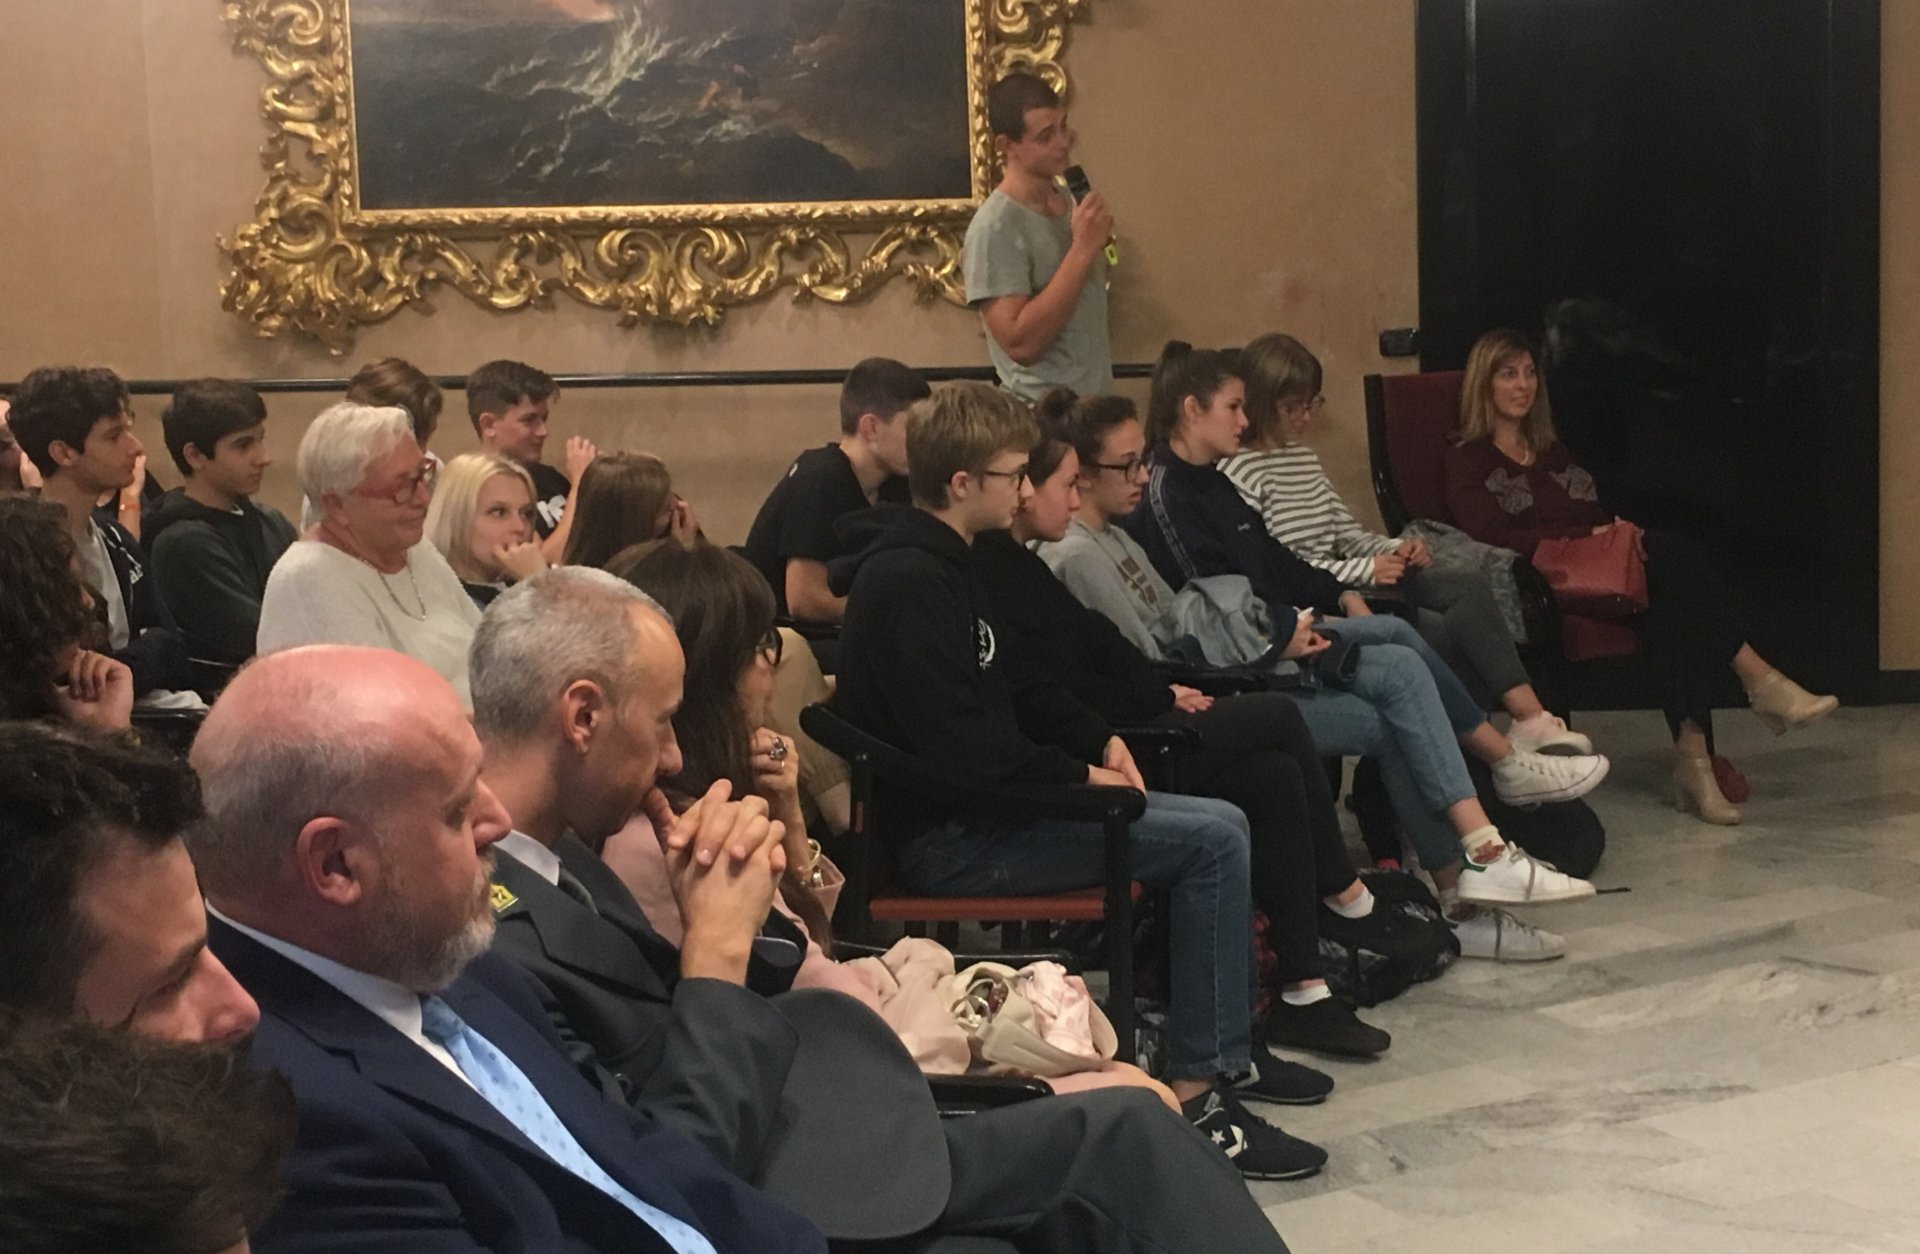 INCONTRO SONDRIO 23 settembre - Le domande degli studenti durante l'incontro con Pietro Sebastiani, Ambasciatore d'Italia presso la Santa Sede